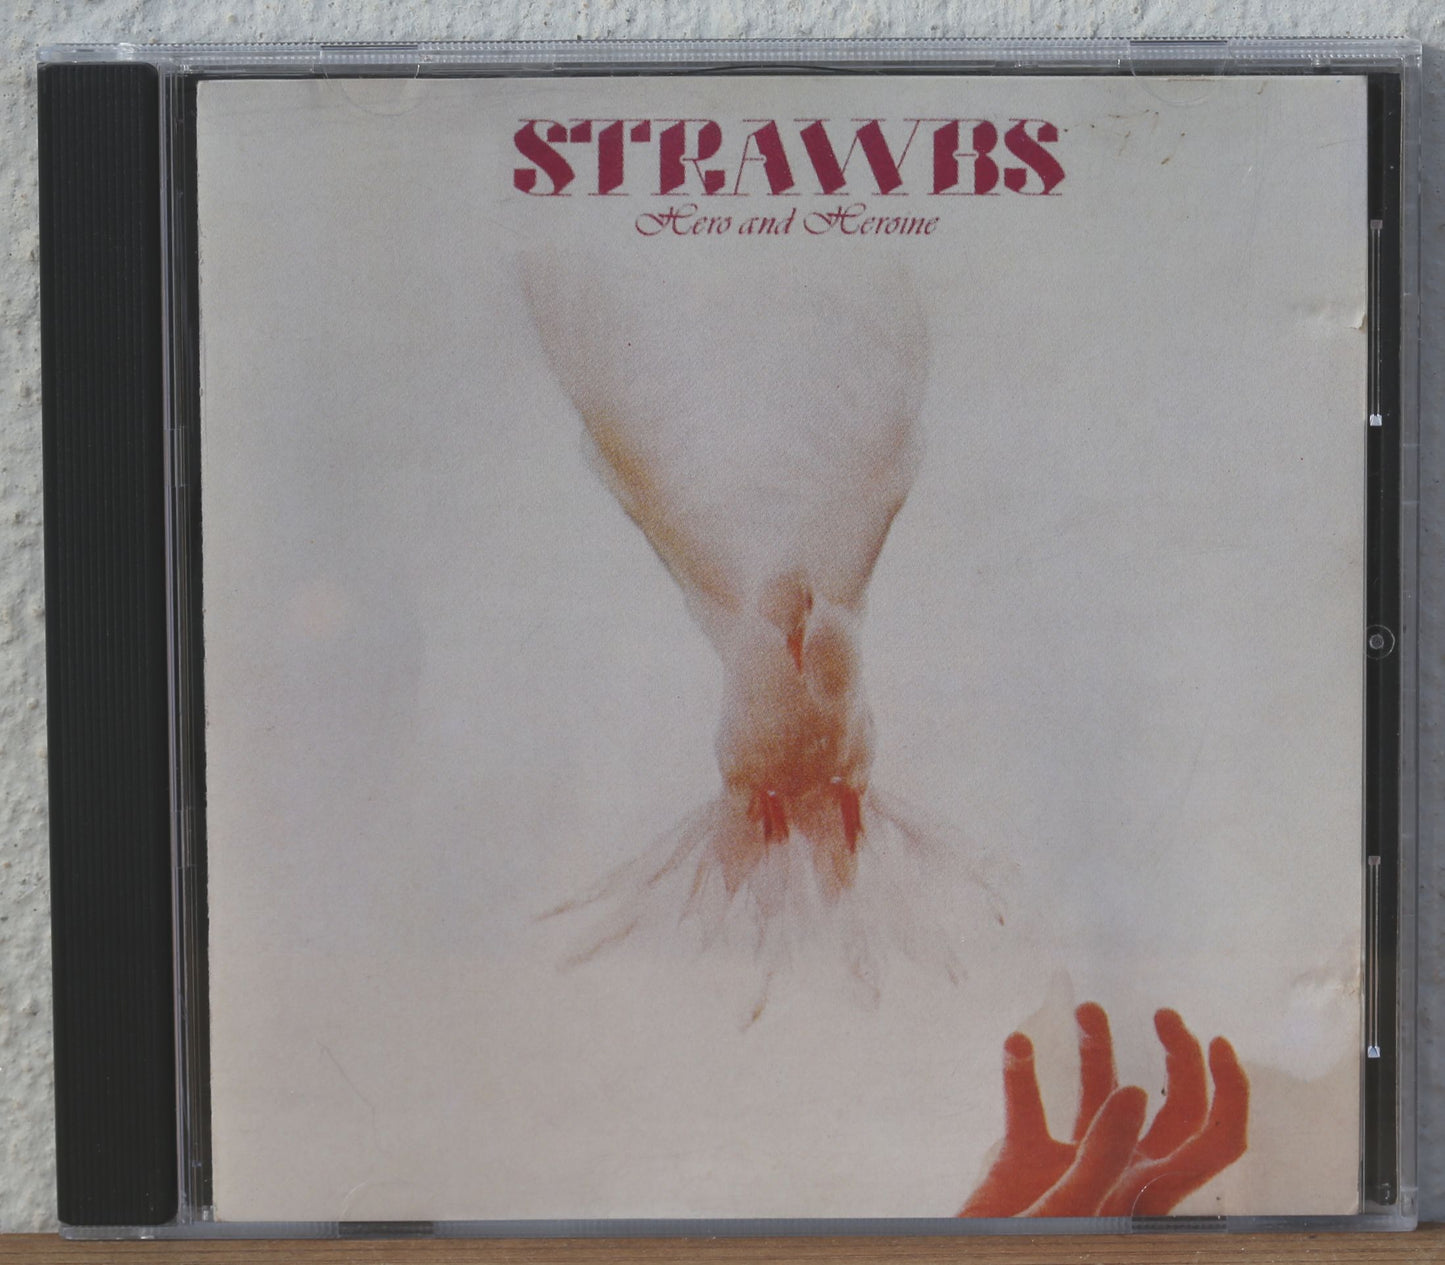 Strawbs - Hero and Heroine (cd)